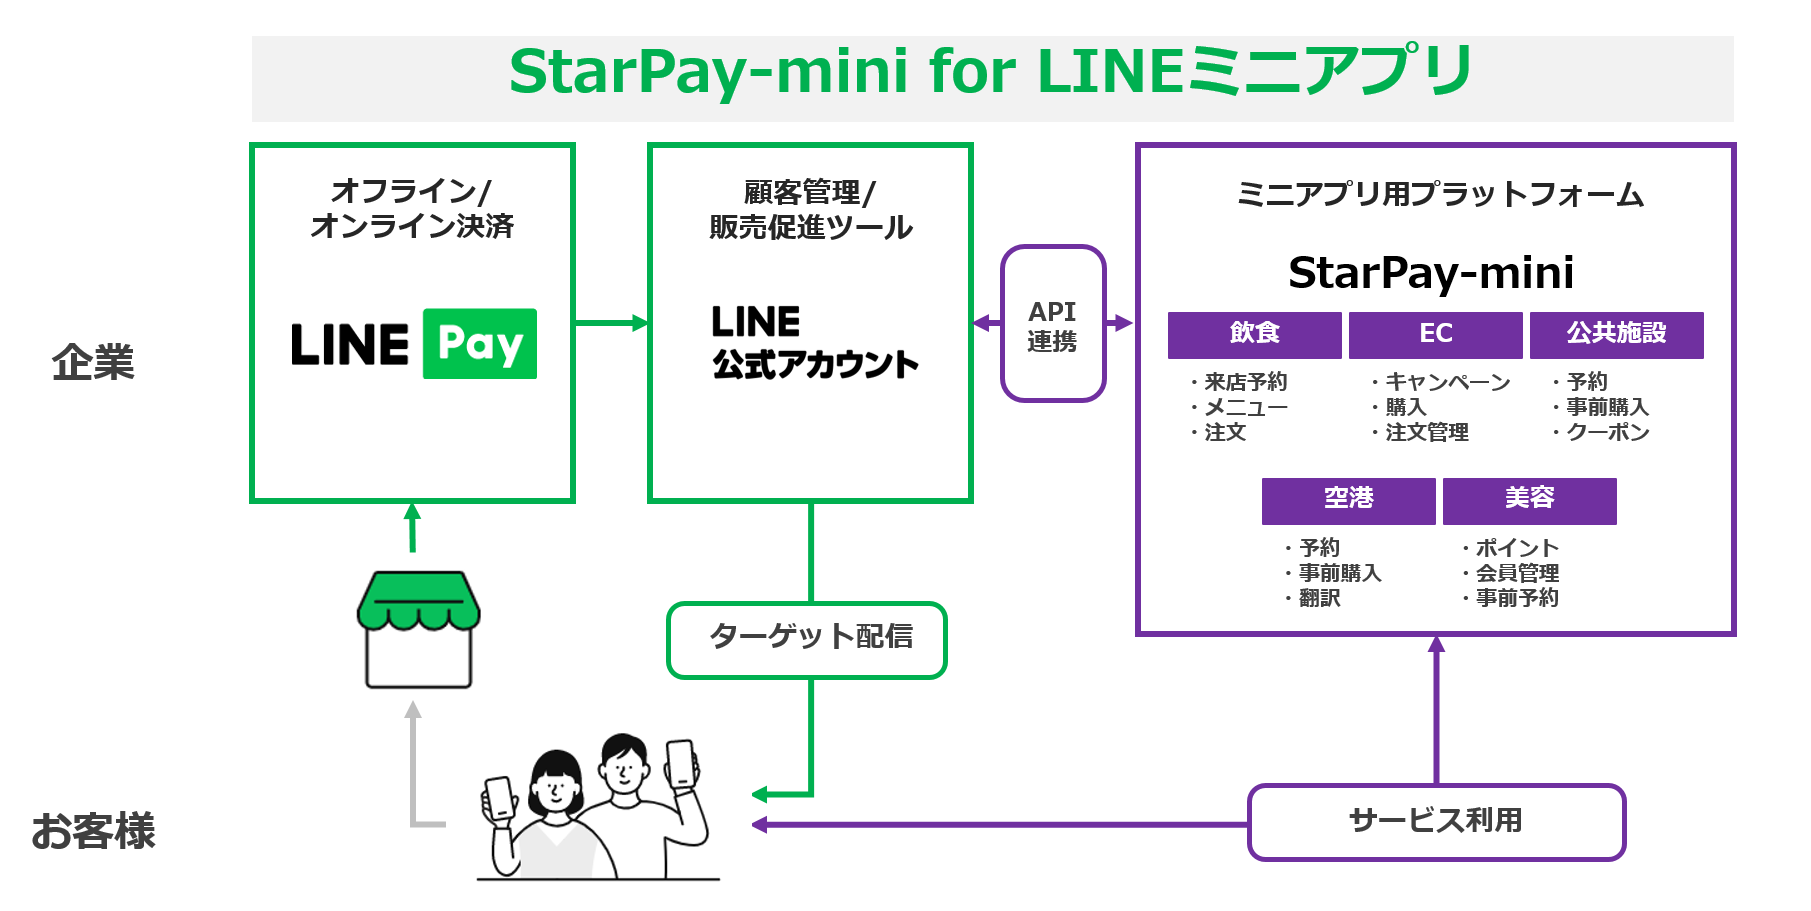 「StarPay-mini for LINEミニアプリ」サービス概要図 <br/>（出典：LINE Payならびにネットスターズの報道発表資料より）